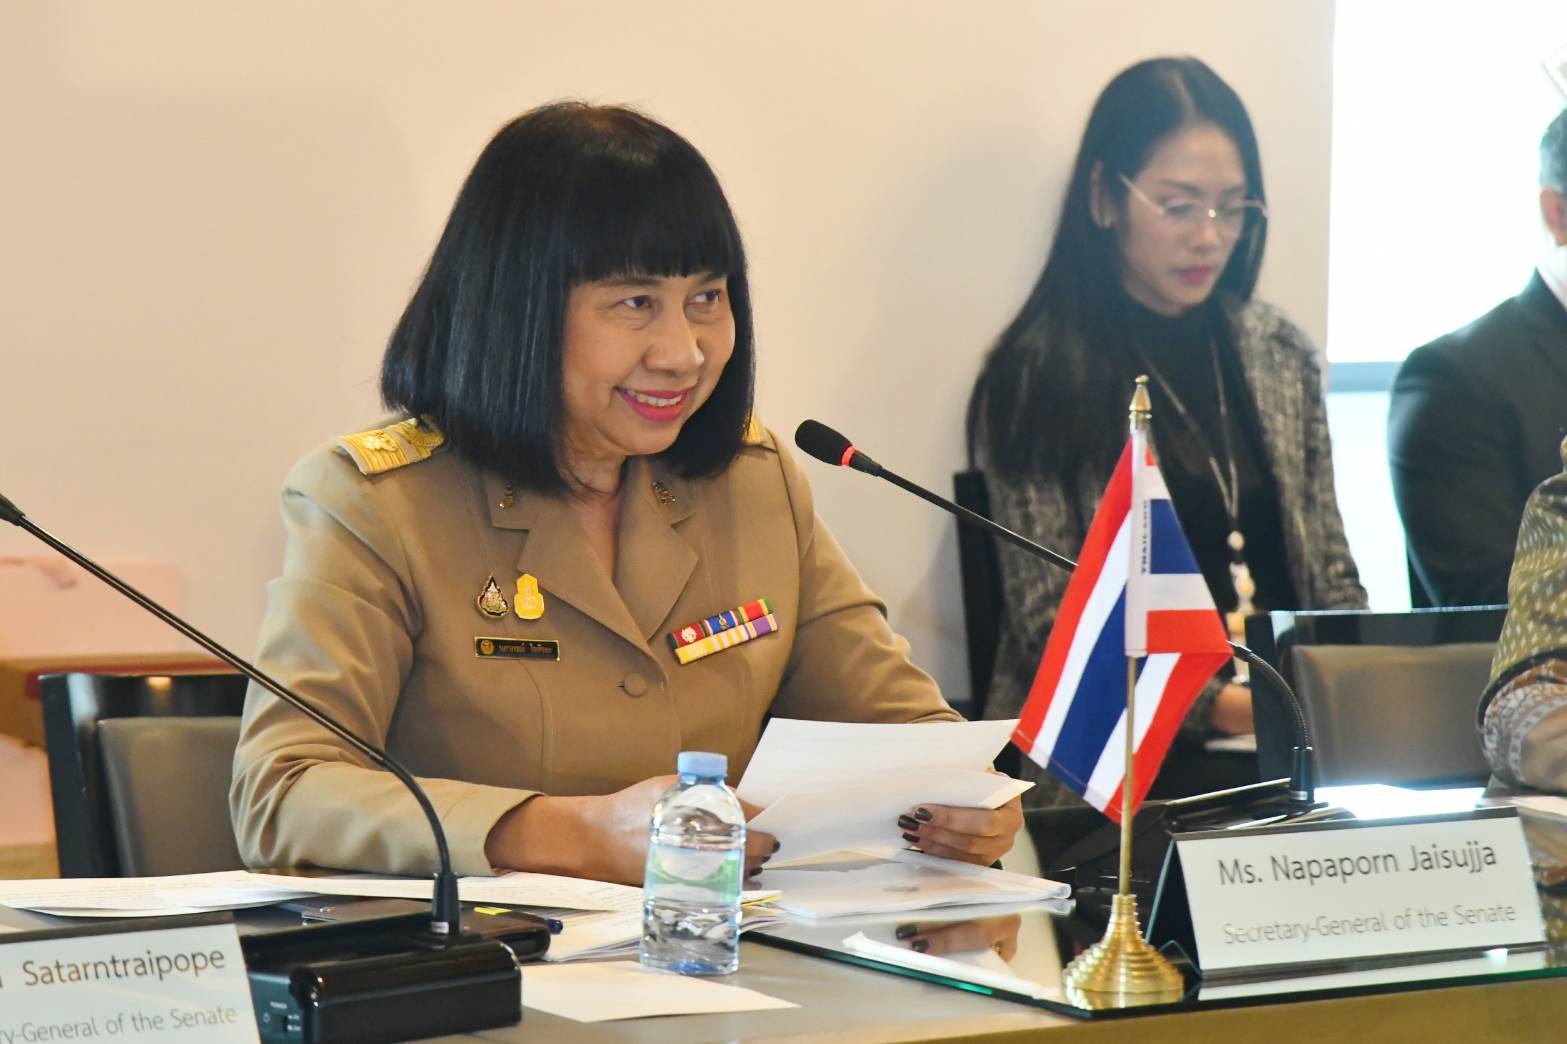 เลขาธิการวุฒิสภาให้การรับรองเลขาธิการรัฐสภาฮังการี ในโอกาสเดินทางเยือนประเทศไทยอย่างเป็นทางการและหารือข้อราชการร่วมกัน